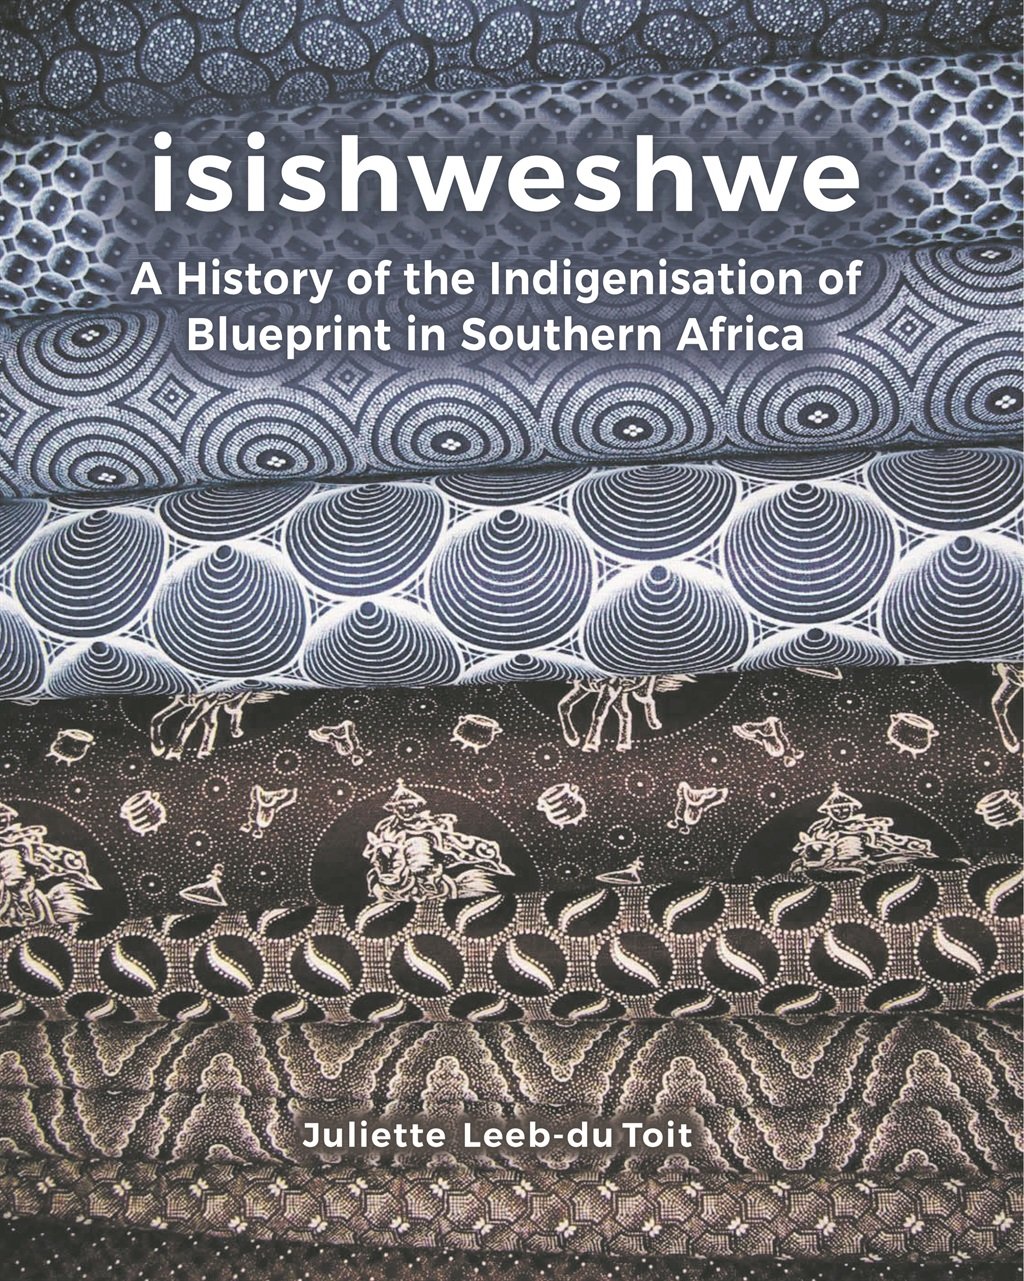 Buy > seshoeshoe fabric > in stock